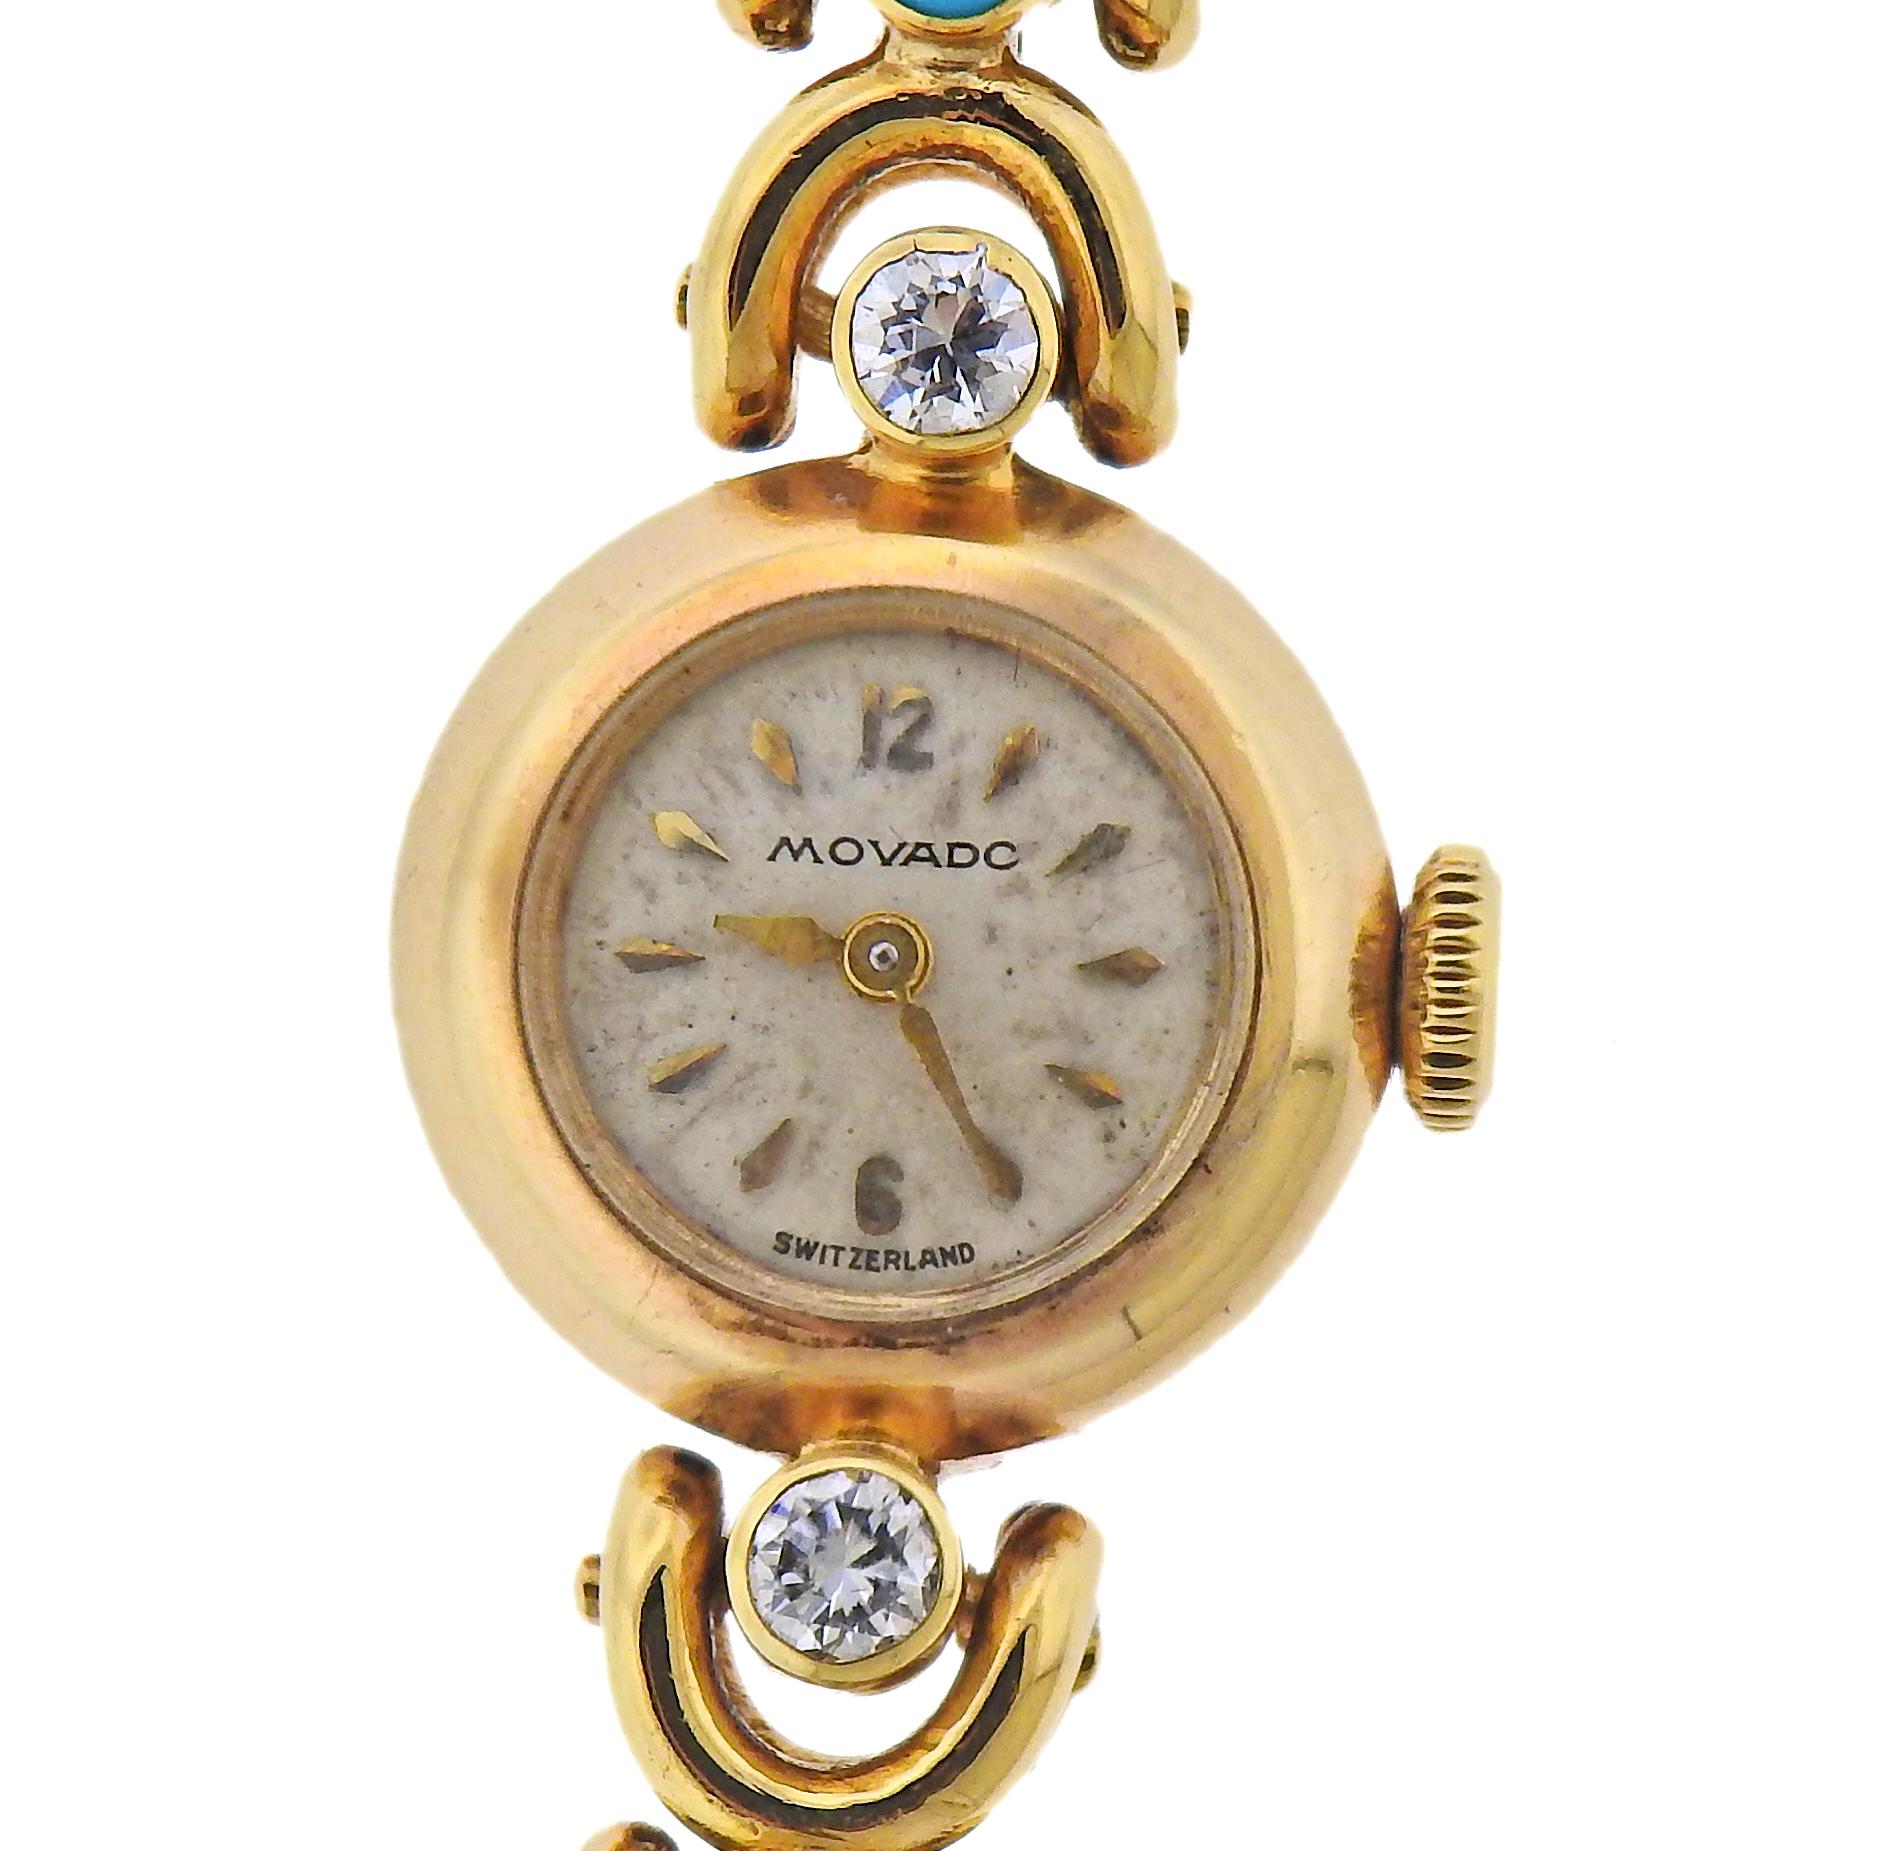 Vintage Mid Century Movado Uhr mit einem Van Cleef & Arpels Armband, geschmückt mit ca. 1,20cts in Diamanten und Türkis. Gehäuse - 15 mm Durchmesser ohne Krone. Das Armband ist 6,75